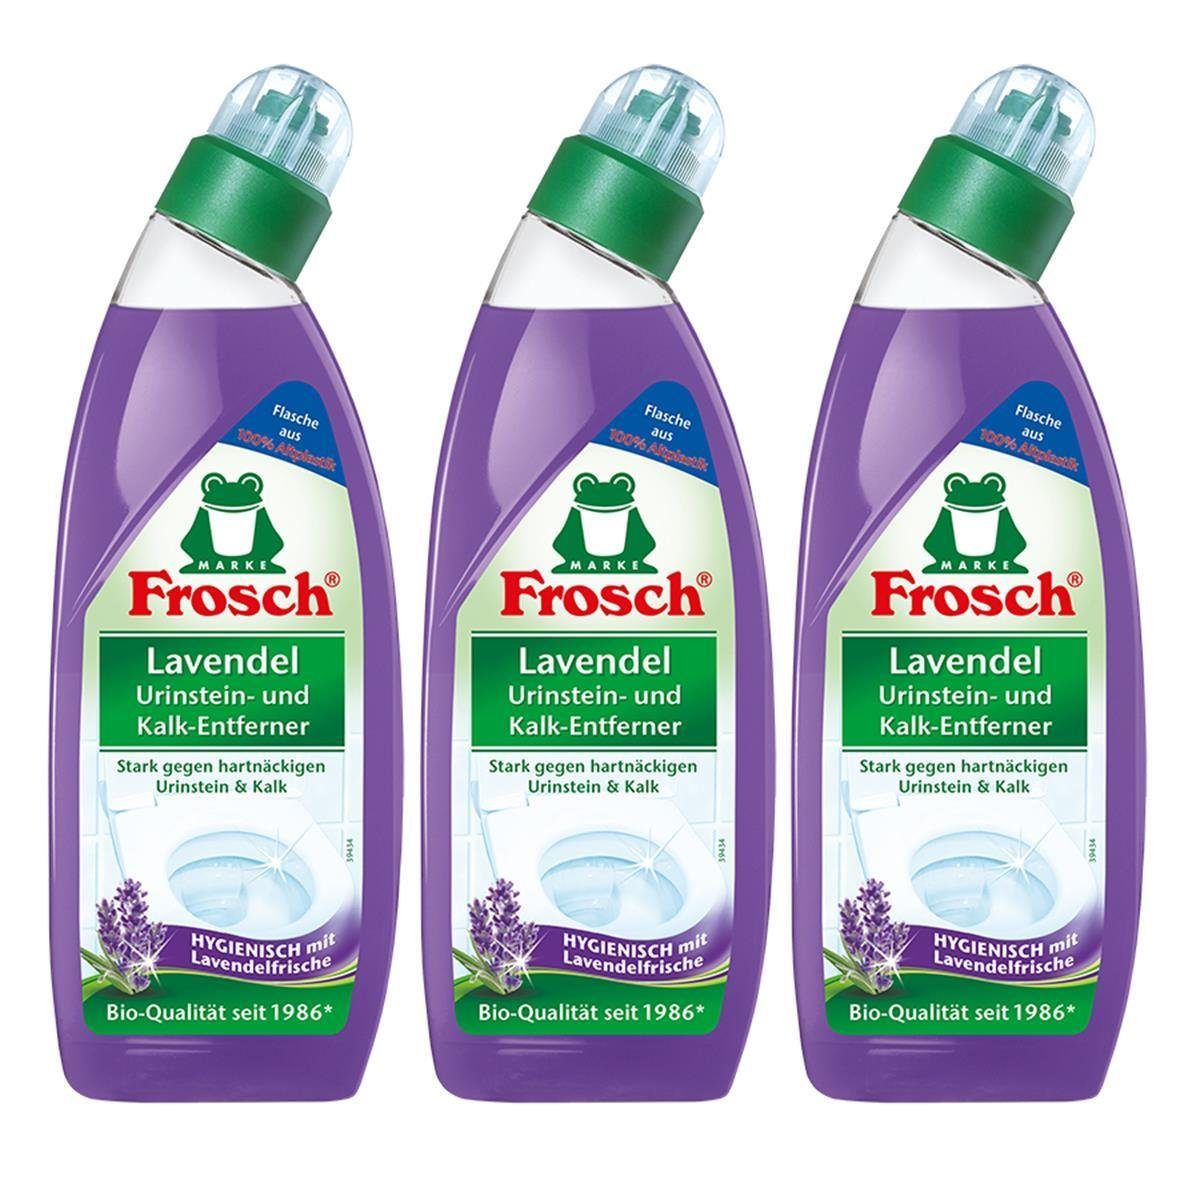 ml FROSCH Urinstein- 750 3x Hygienisch WC-Reiniger und Lavendel - m Frosch Kalk-Entferner